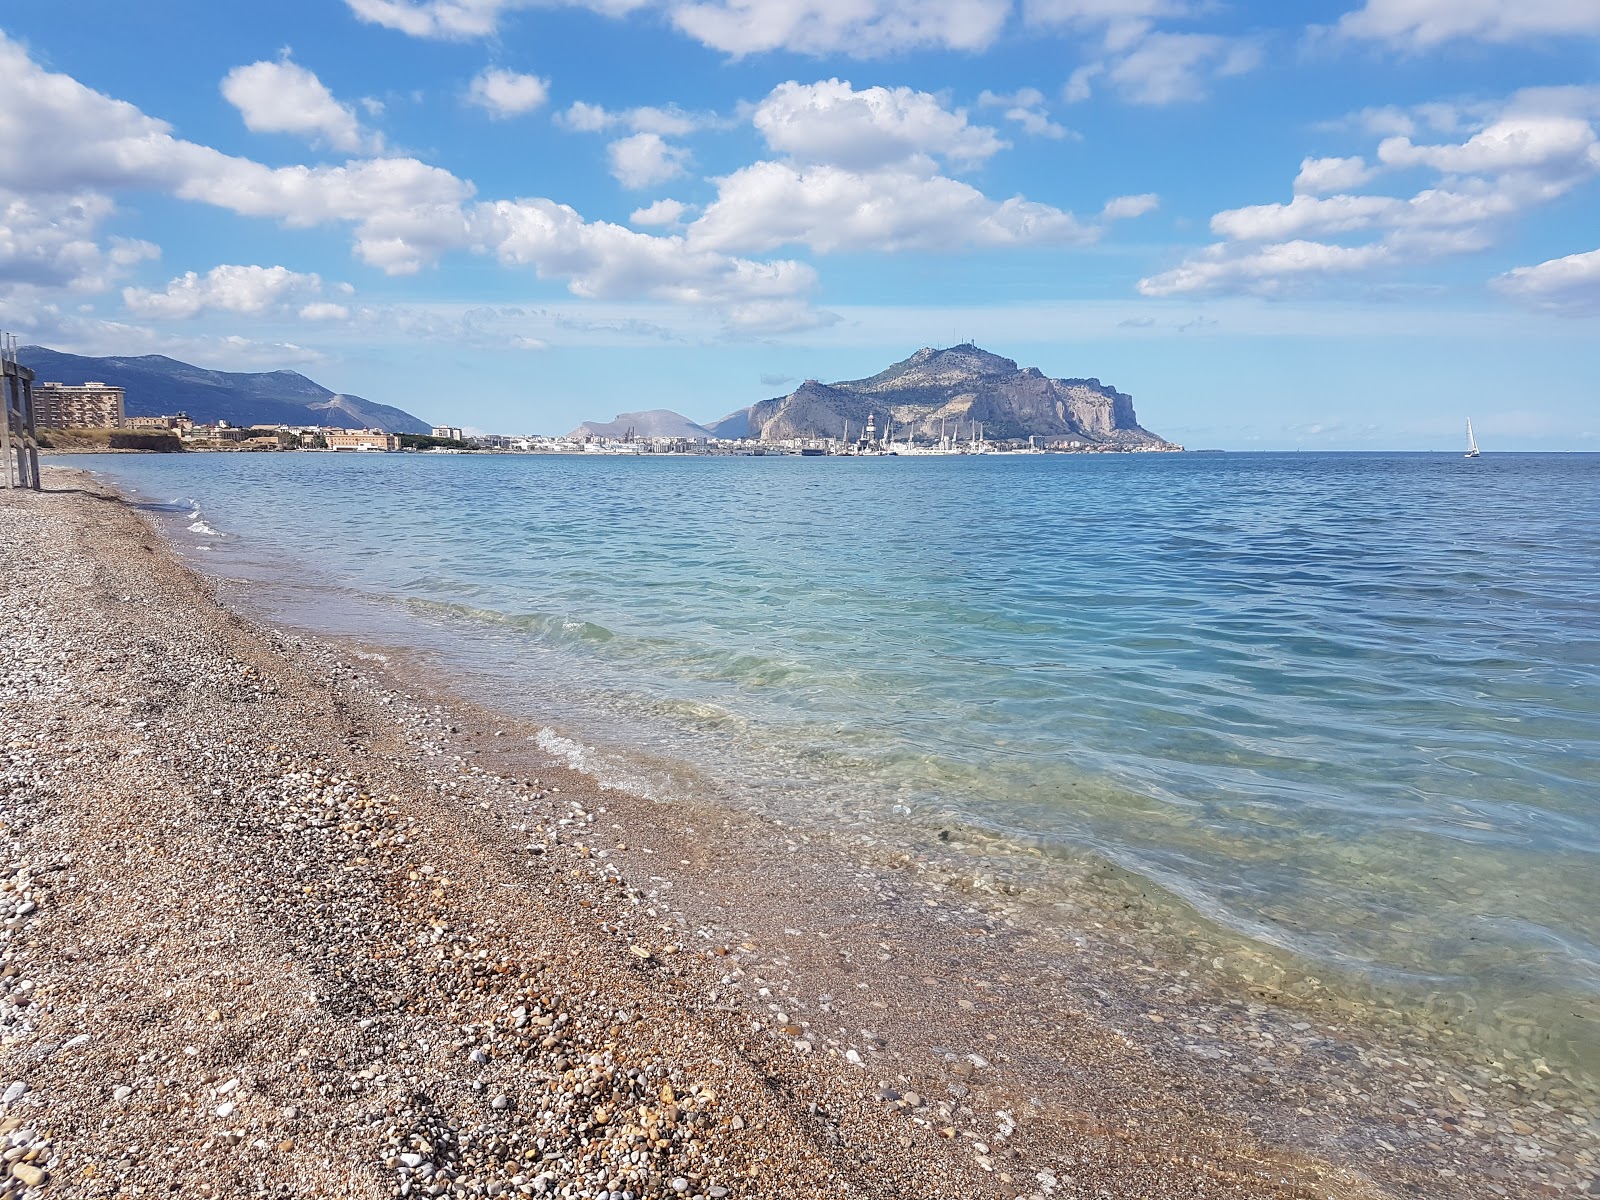 Romagnolo beach'in fotoğrafı gri çakıl taşı yüzey ile